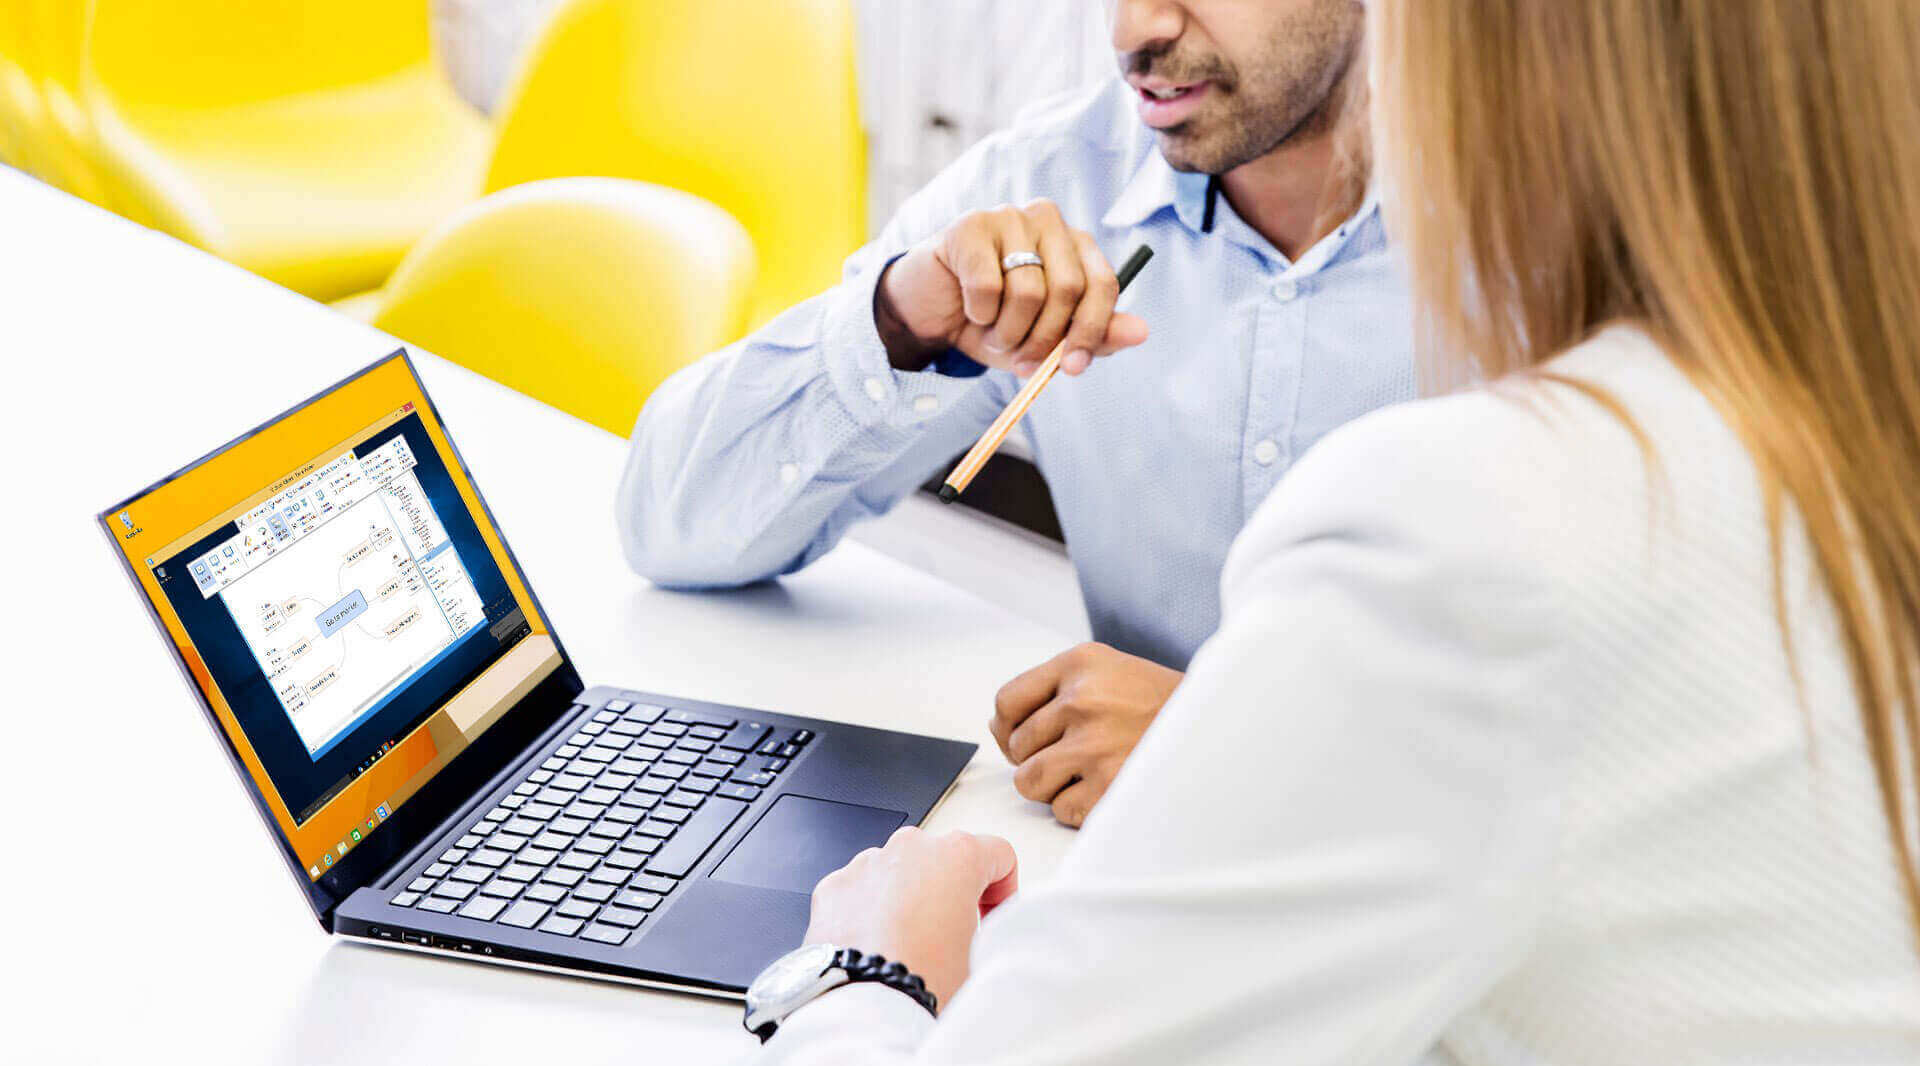 Мужчина и женщина используют функцию демонстрации экрана и показывают на ноутбук во время совещания